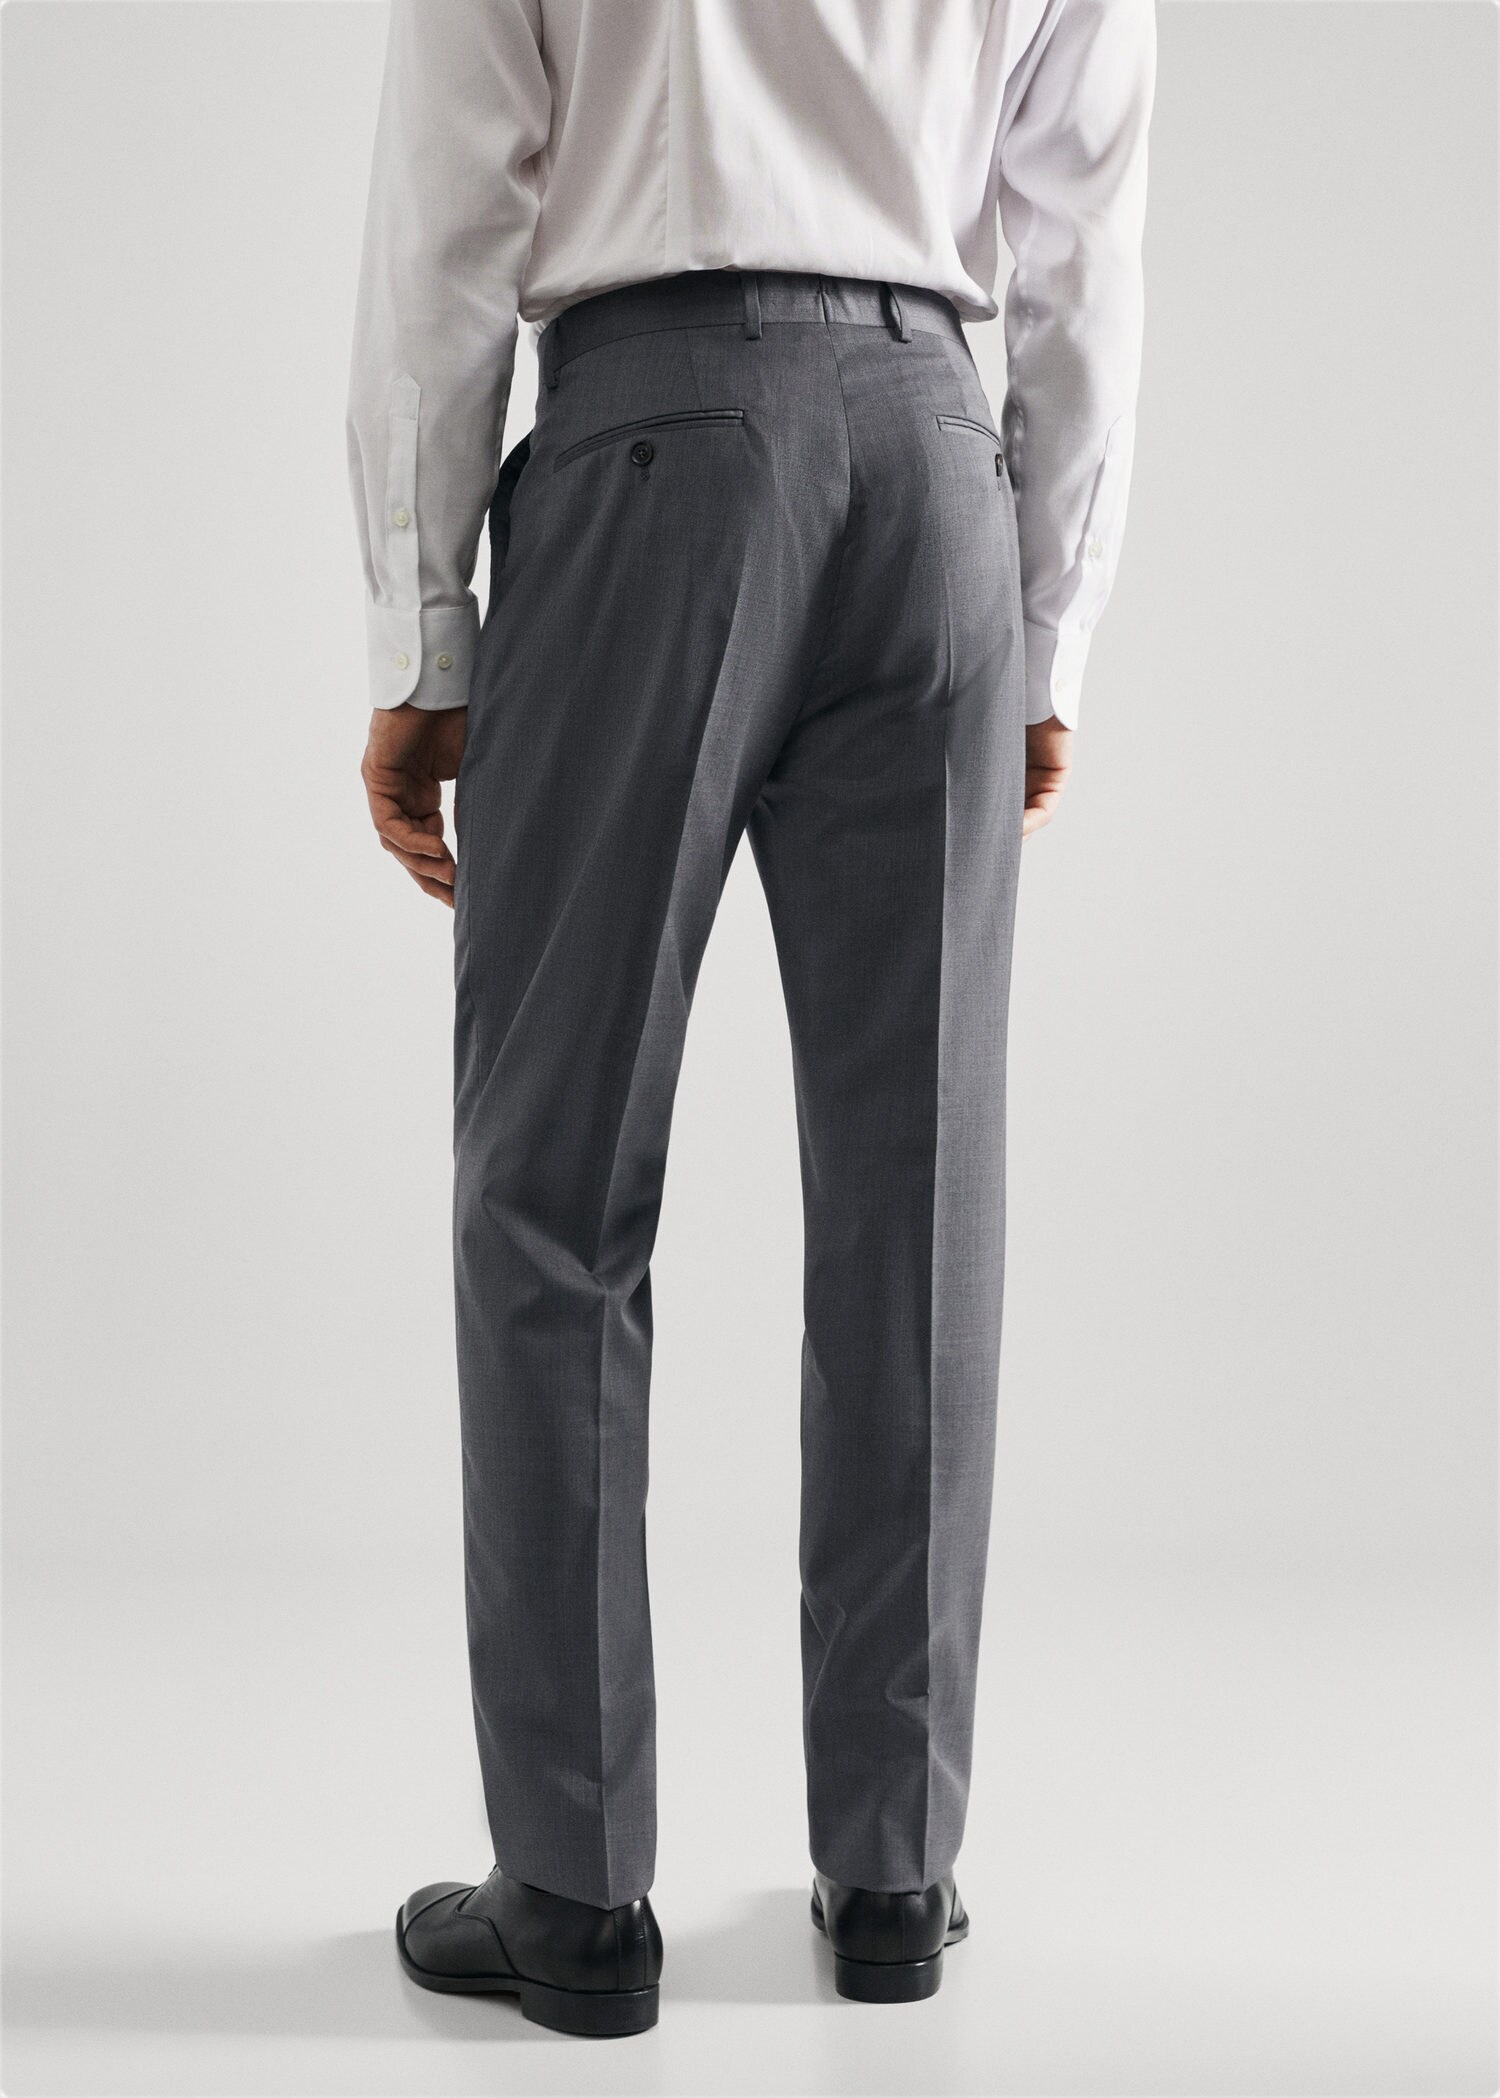 Pantalón traje slim fit lana virgen - Reverso del artículo